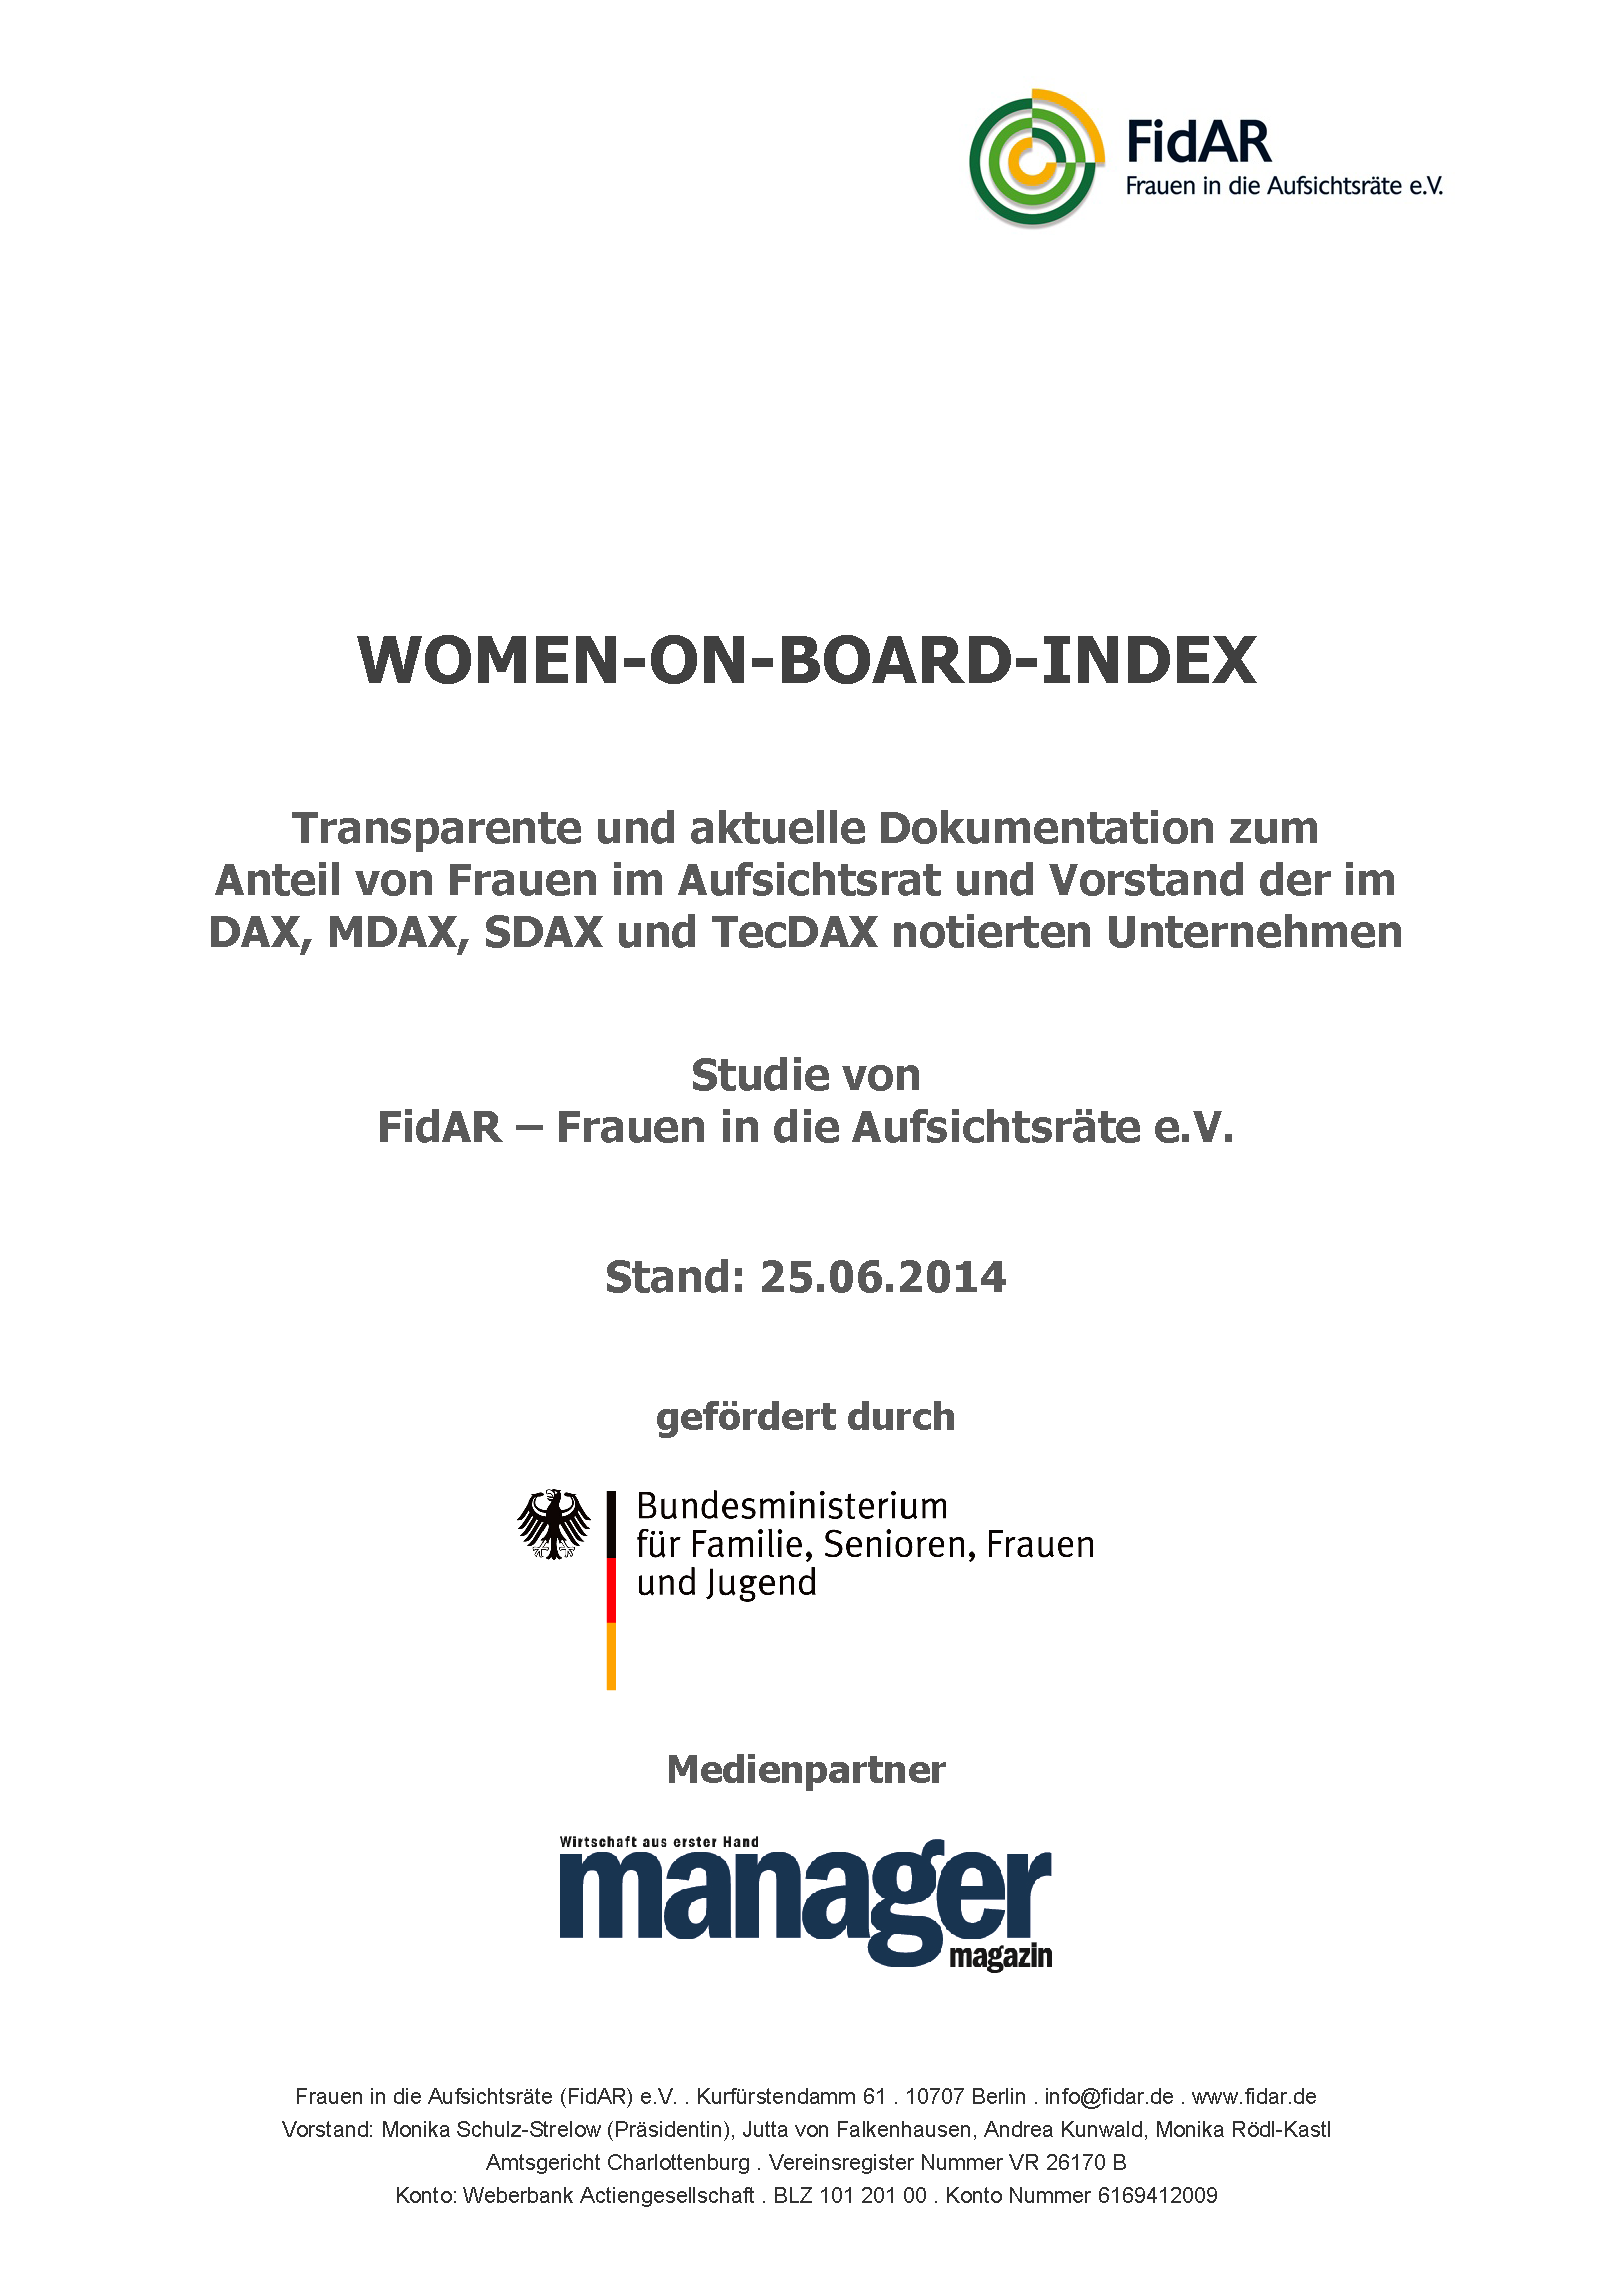 WoB-Index 160 2014-2